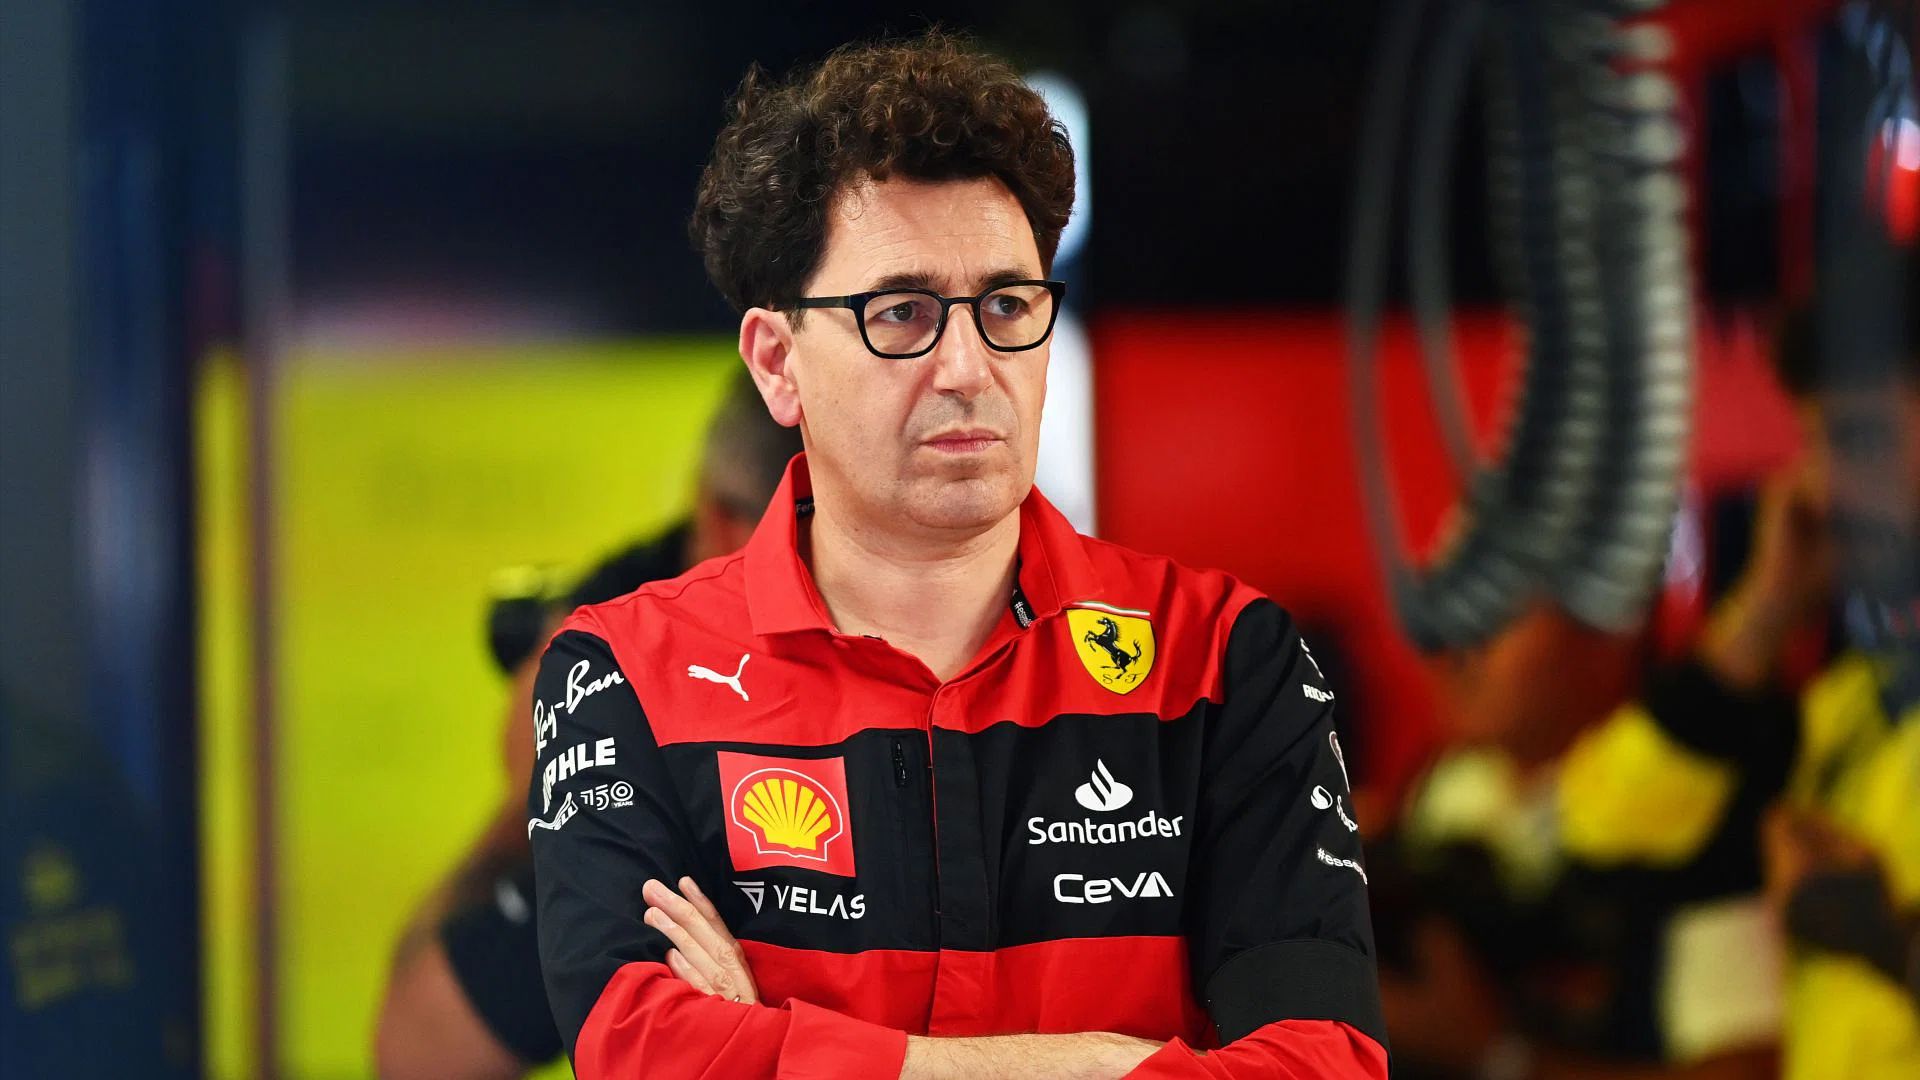 «Снег будет таять на солнце», - босс Ferrari о своих ожиданиях от отчета FIA о предельных затратах